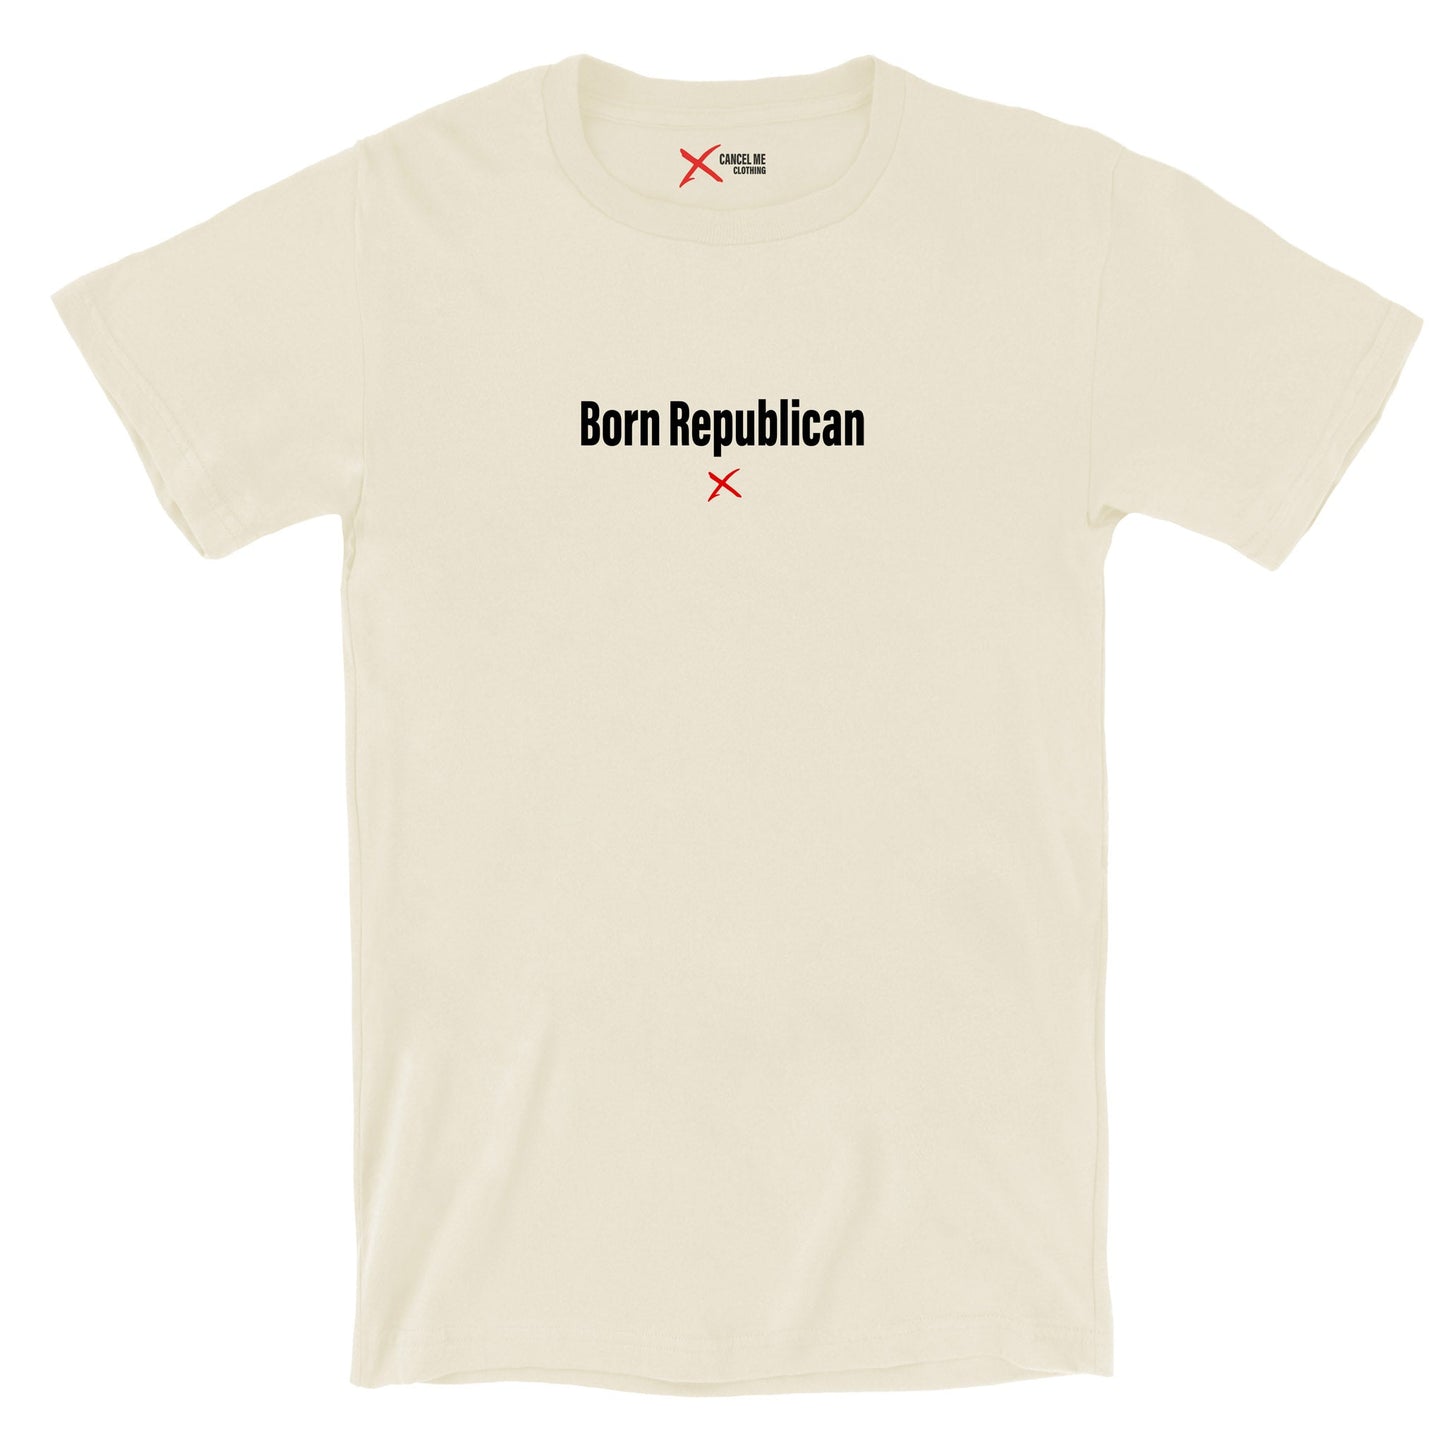 Born Republican - Shirt